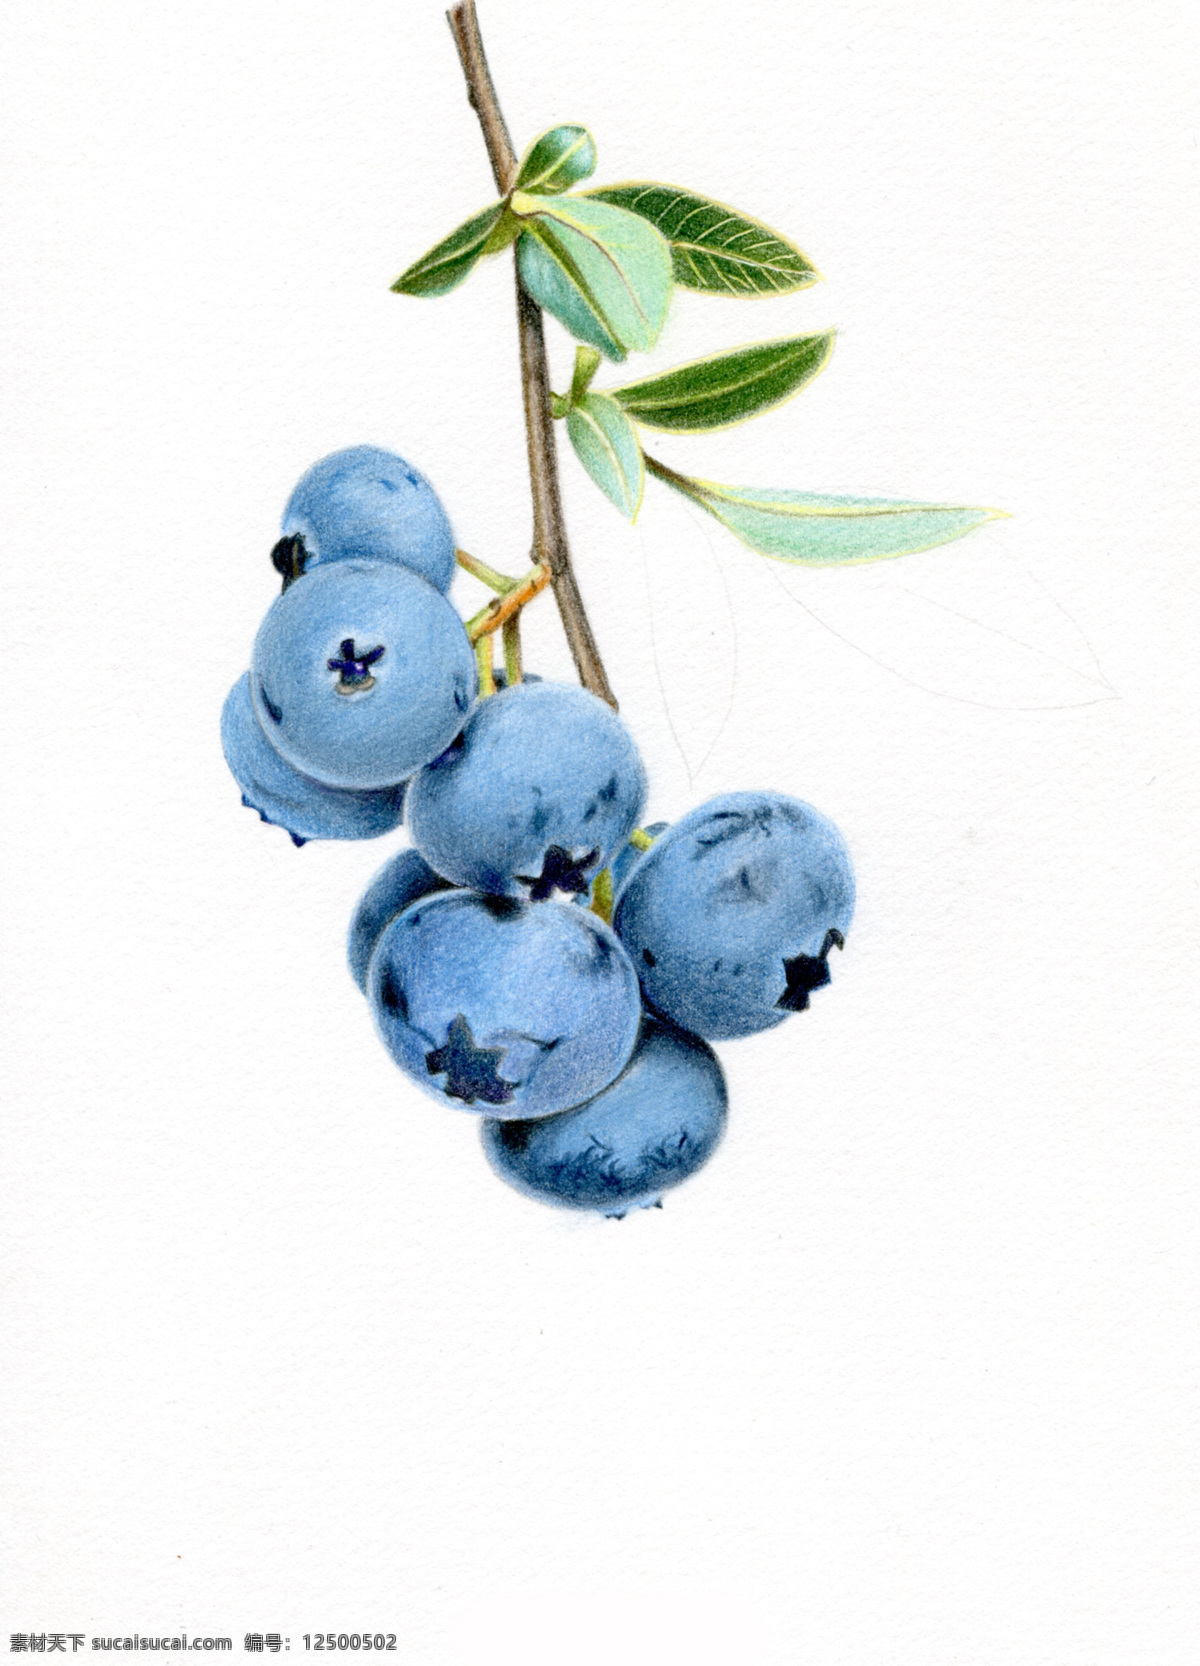 水果蓝莓绘画 蓝莓 国外 彩铅绘画 水彩 水果手绘 临摹 彩铅水果 手绘教程 水果插画 精美绘画 食物 彩色素描 文化艺术 绘画书法